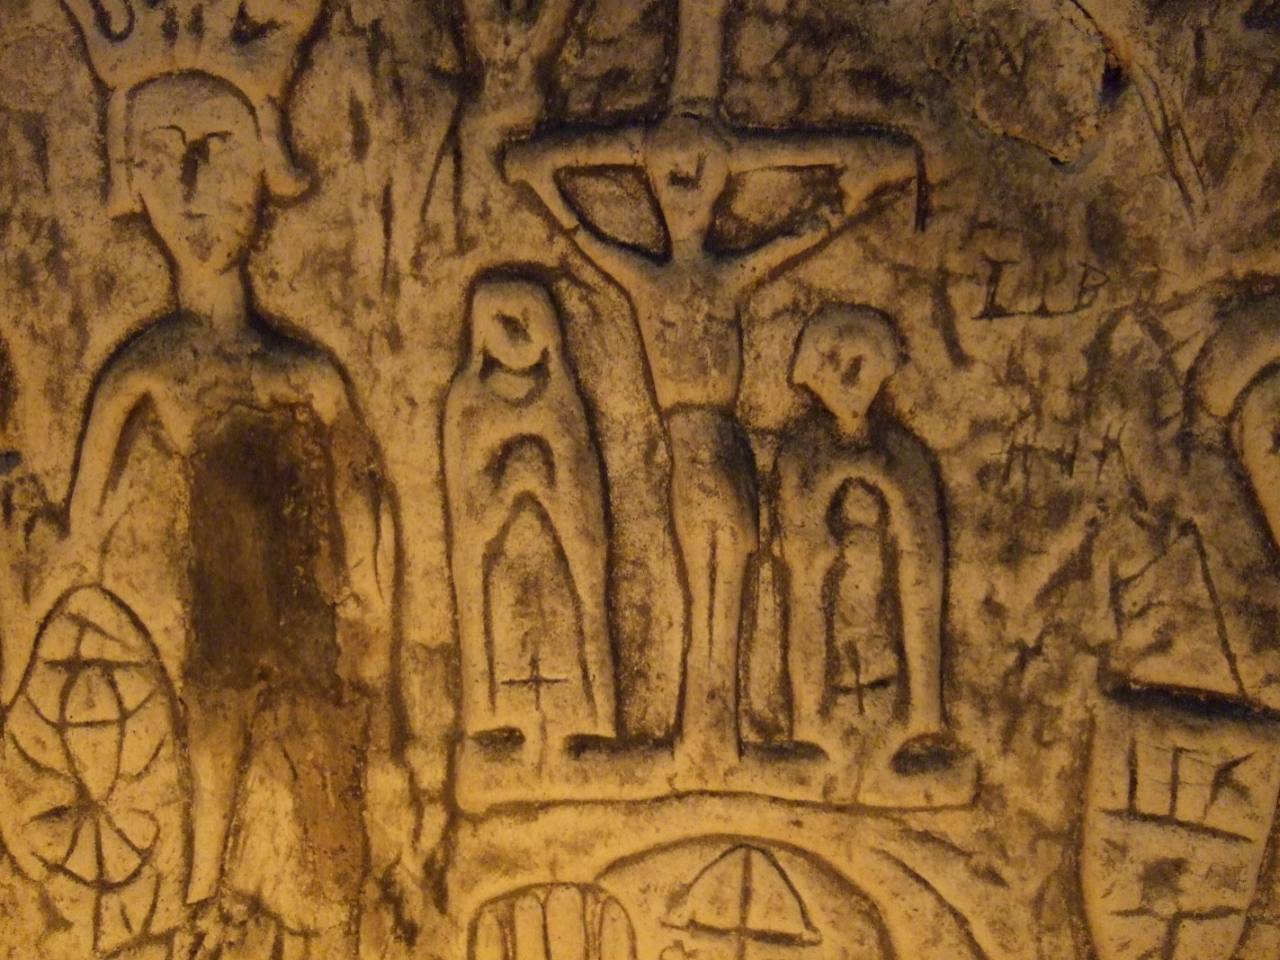 人造罗伊斯顿洞穴 5 中的神秘符号和雕刻